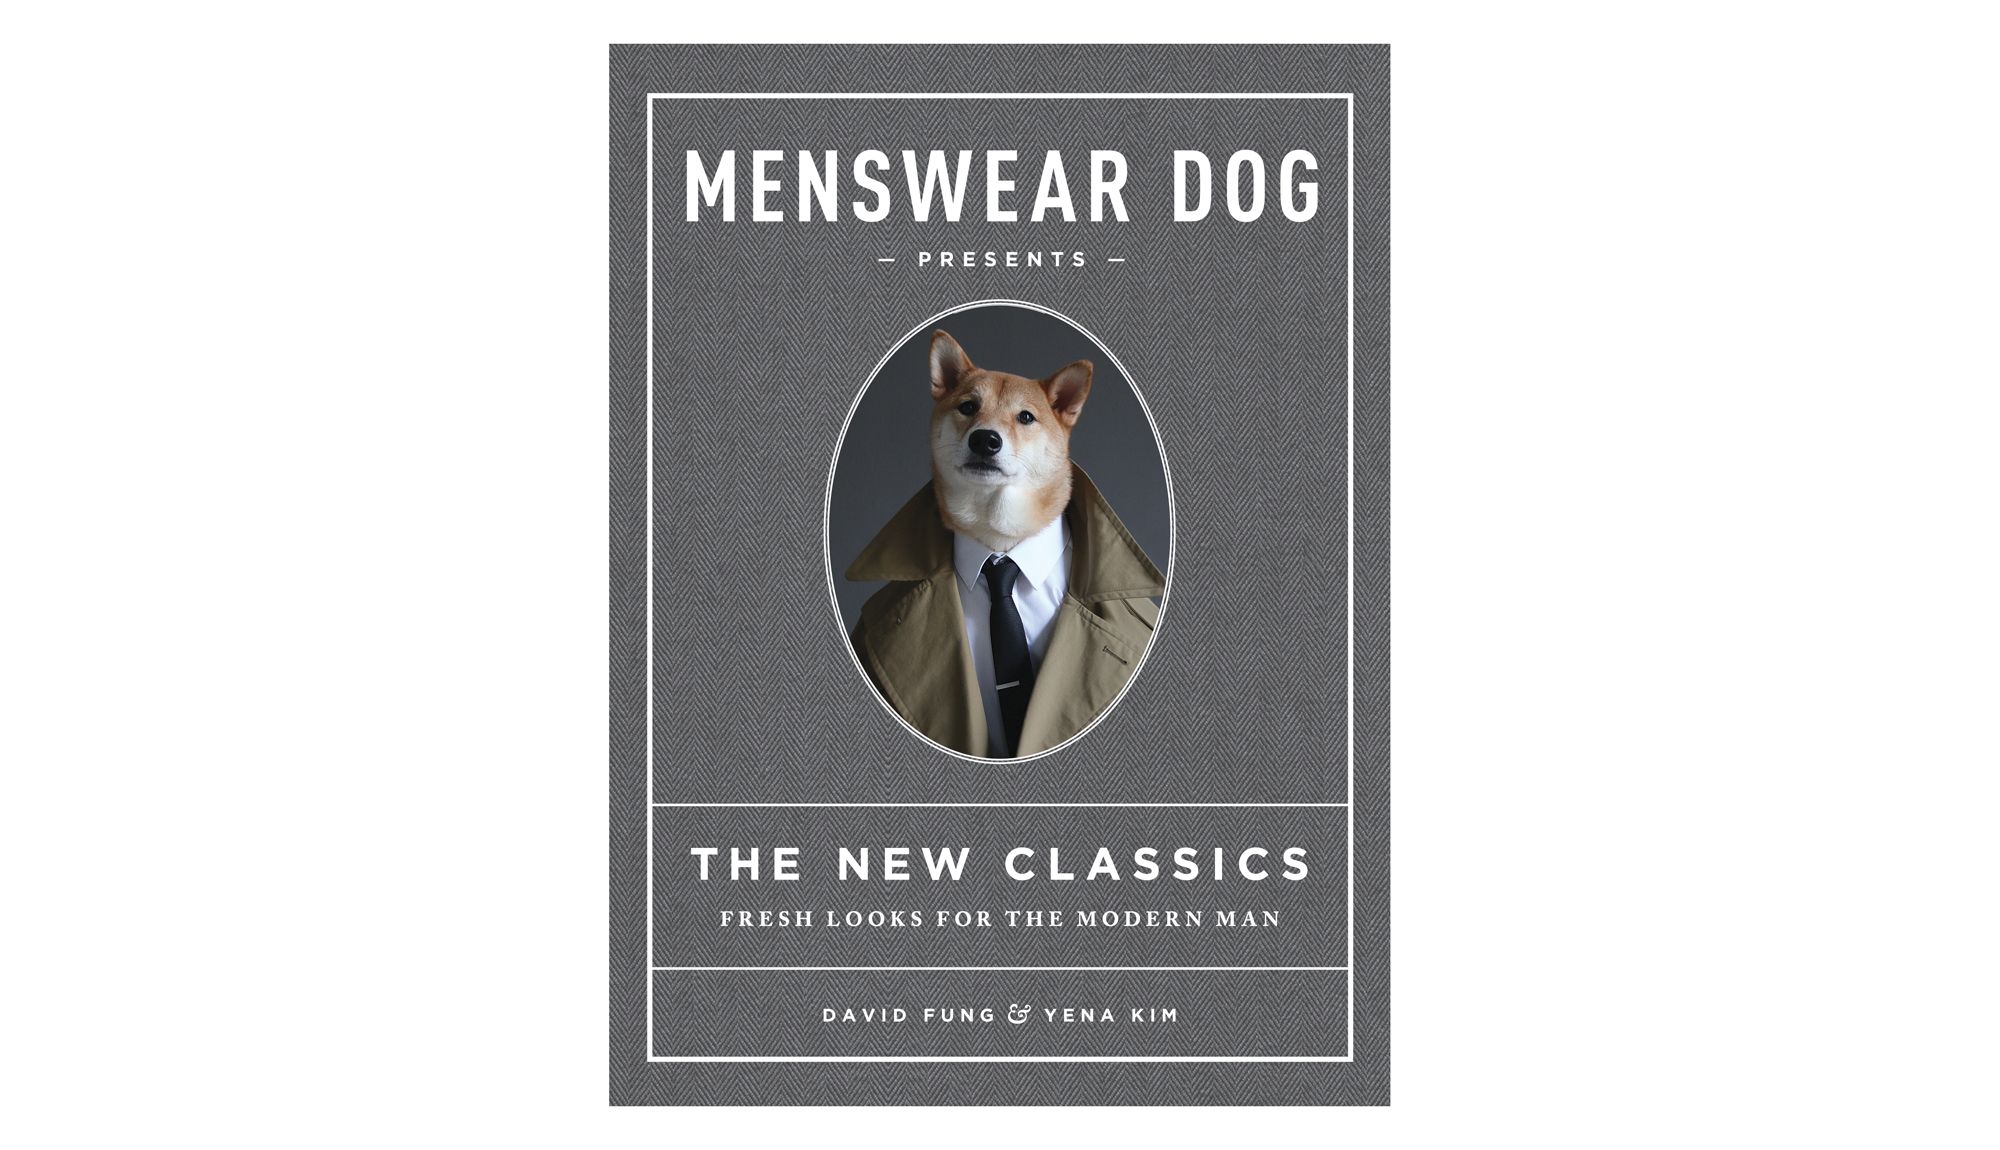 Мужская одежда Dog представляет новую классику: свежие образы для современного мужчины, Дэвид Фанг и Йена Ким